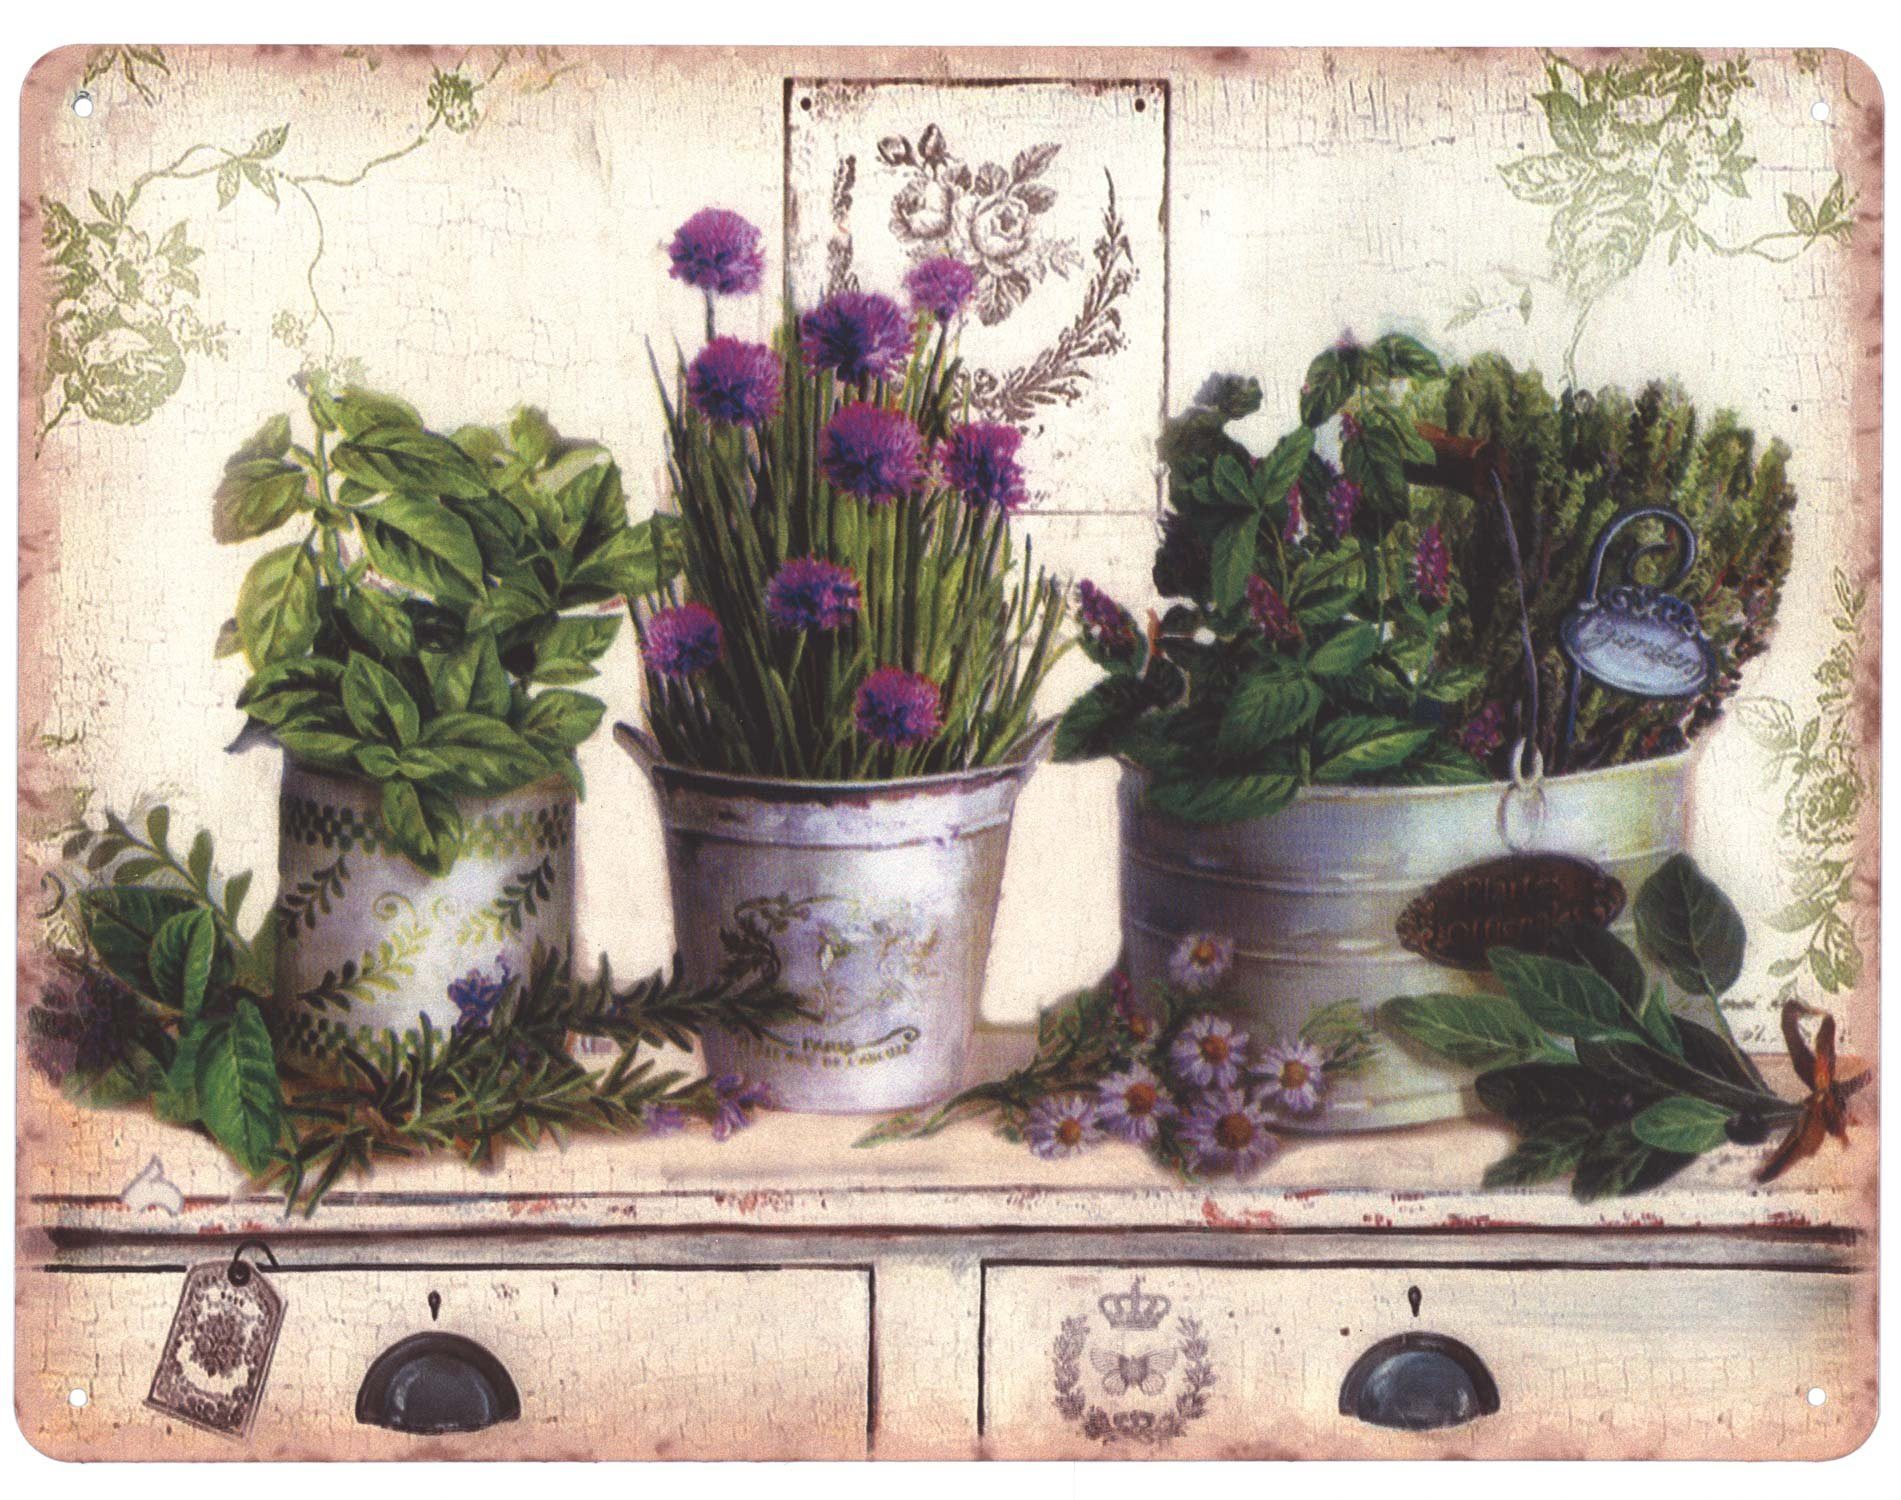 Moritz Metallschild Blechschild Pflanzen und Blumen in Töpfe, 25 x 33 cm Vintage Retro Deko Schild Metallschild Wandbild Schild